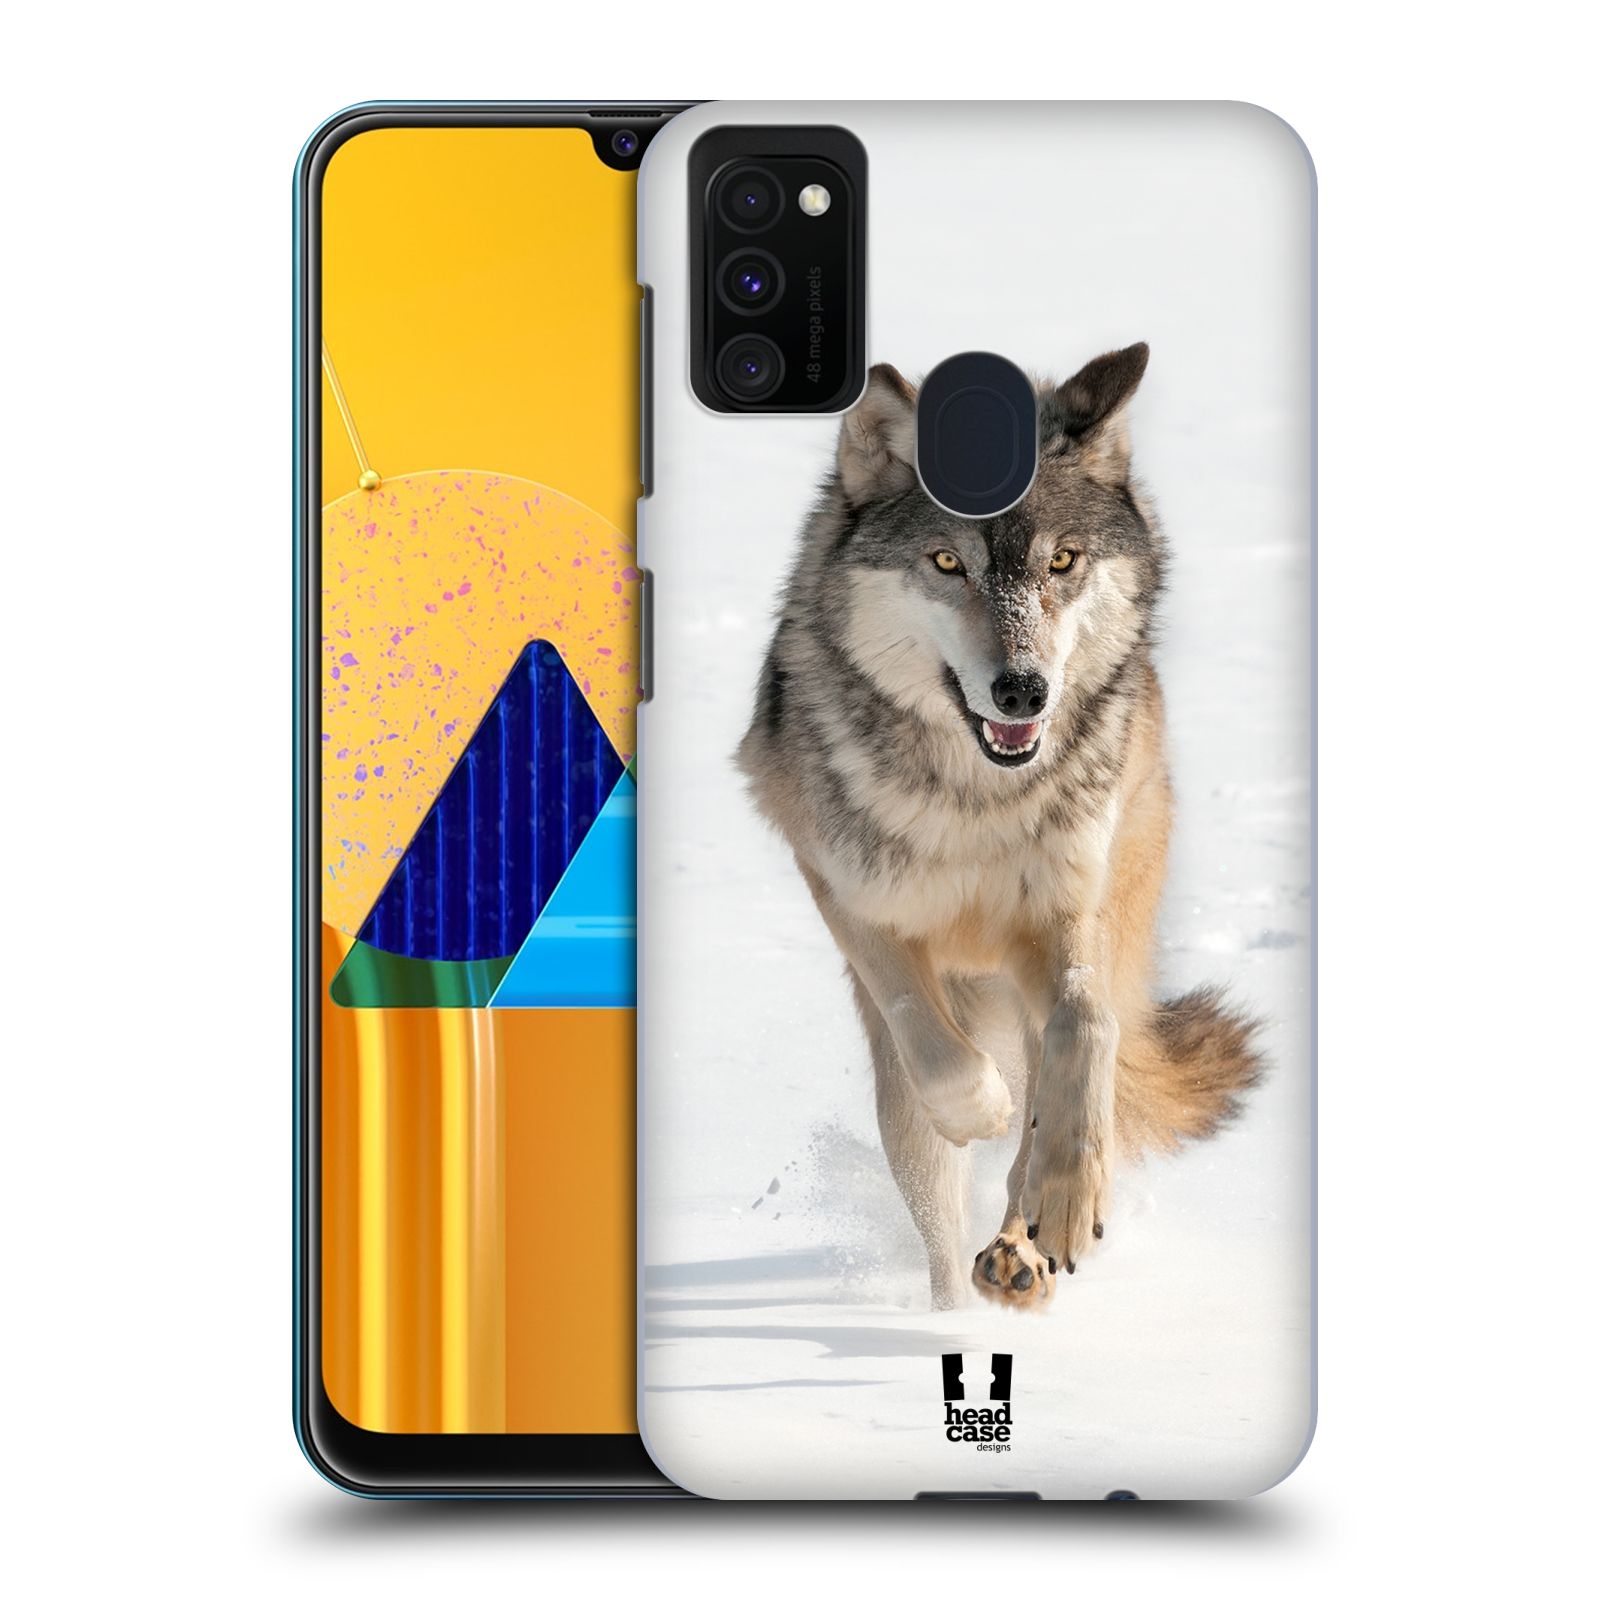 Zadní obal pro mobil Samsung Galaxy M21 - HEAD CASE - Svět zvířat divoký vlk